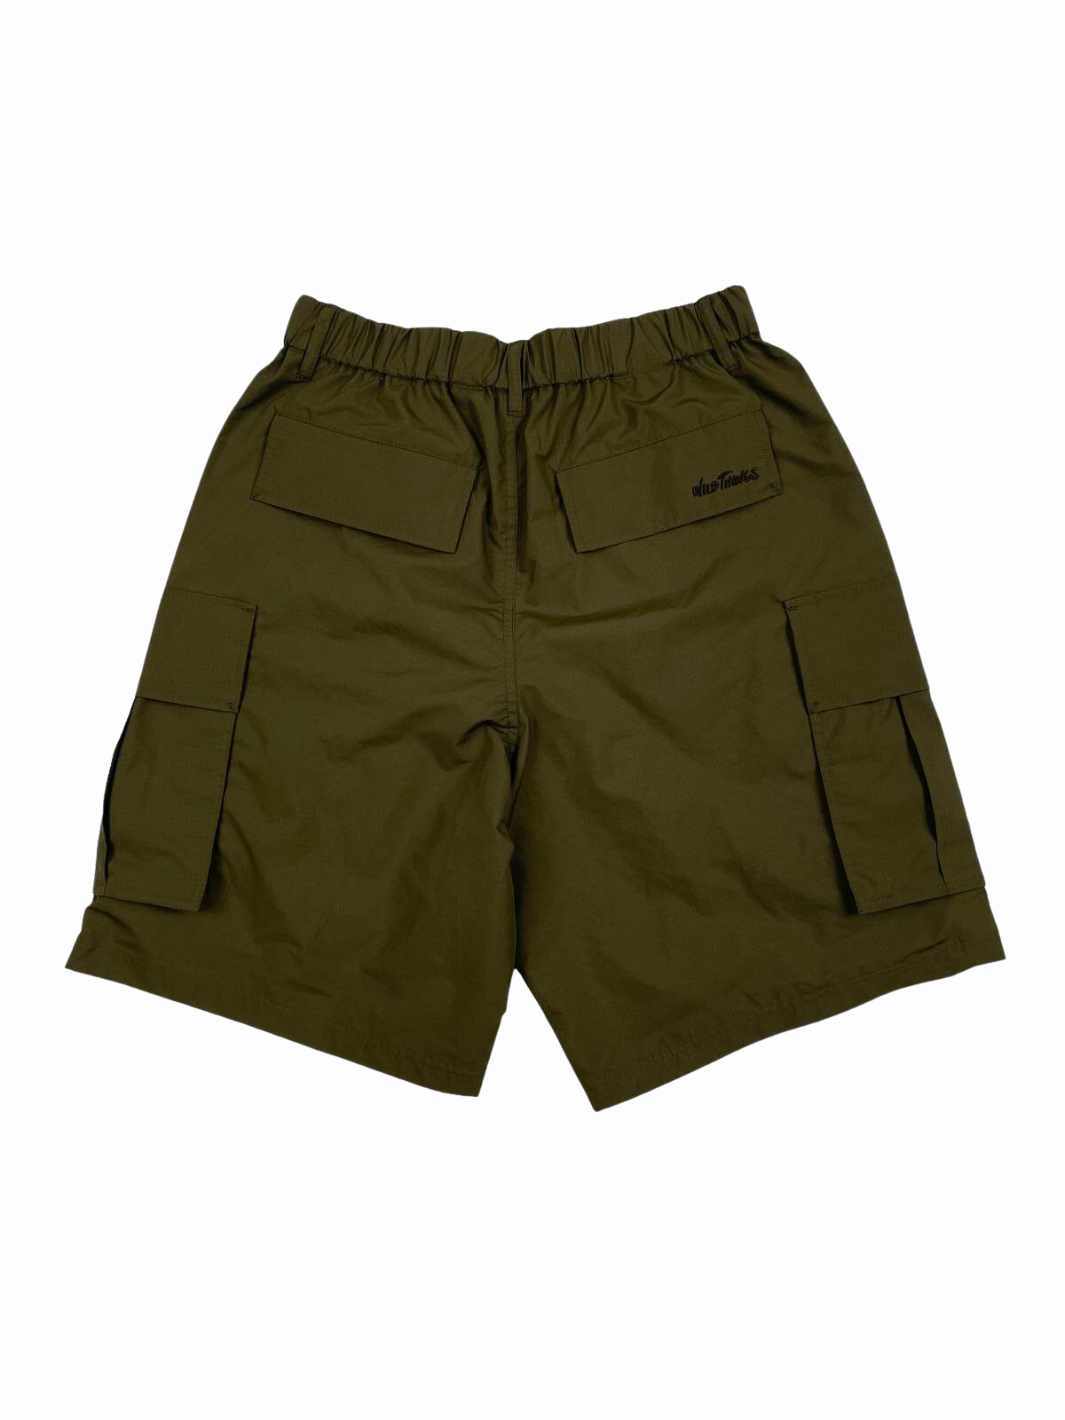 Wild Things Shorts Shorts | Cargo Shorts Olive